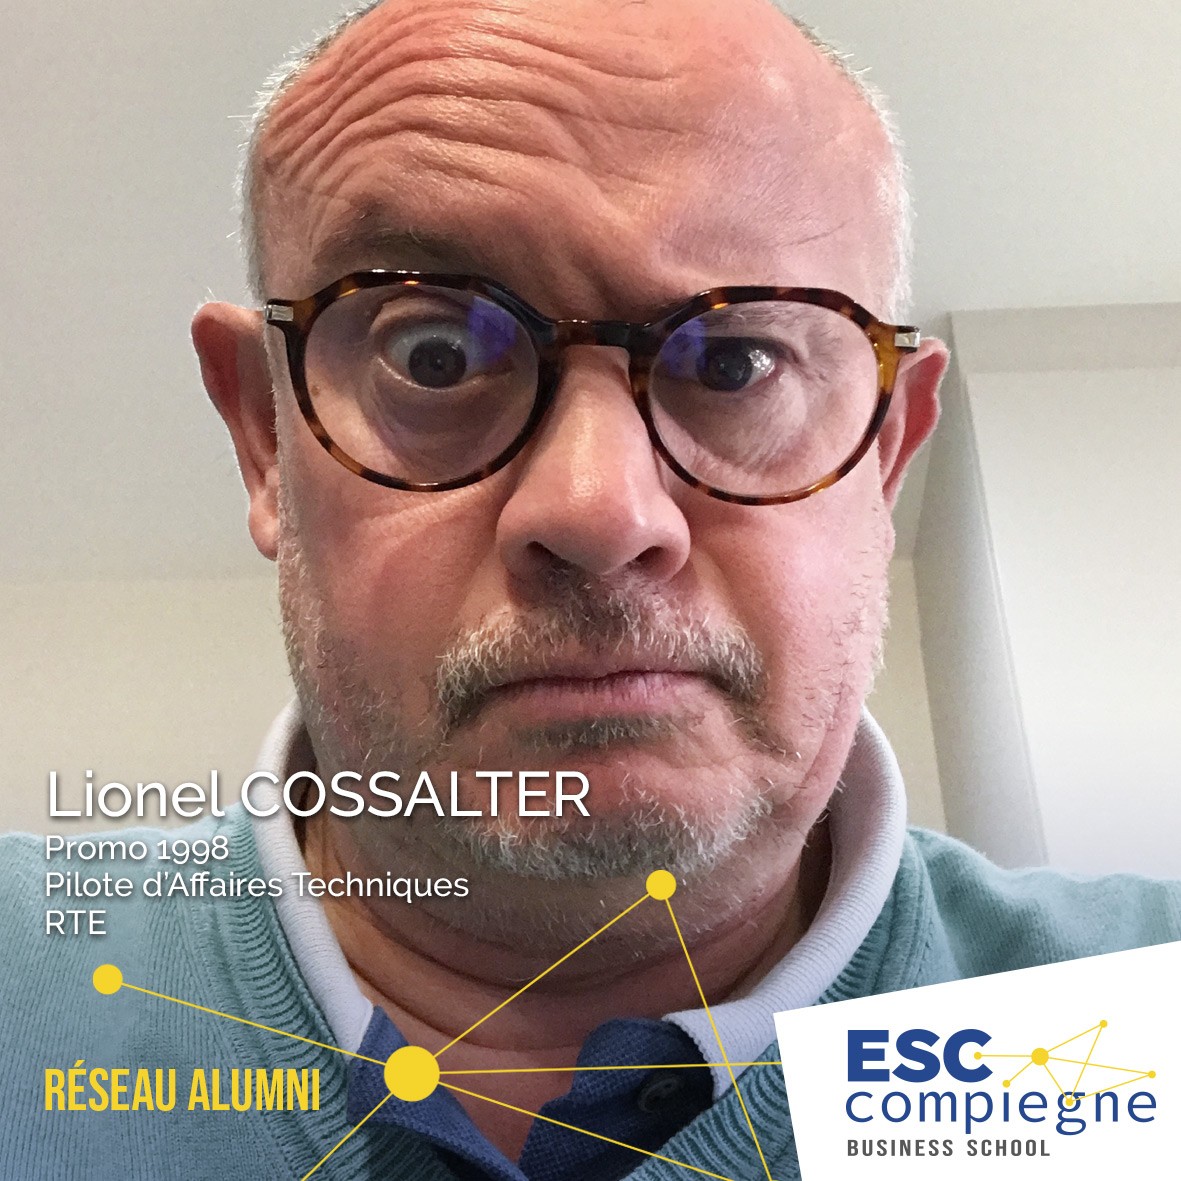 ESCC-Lionel-Cossalter